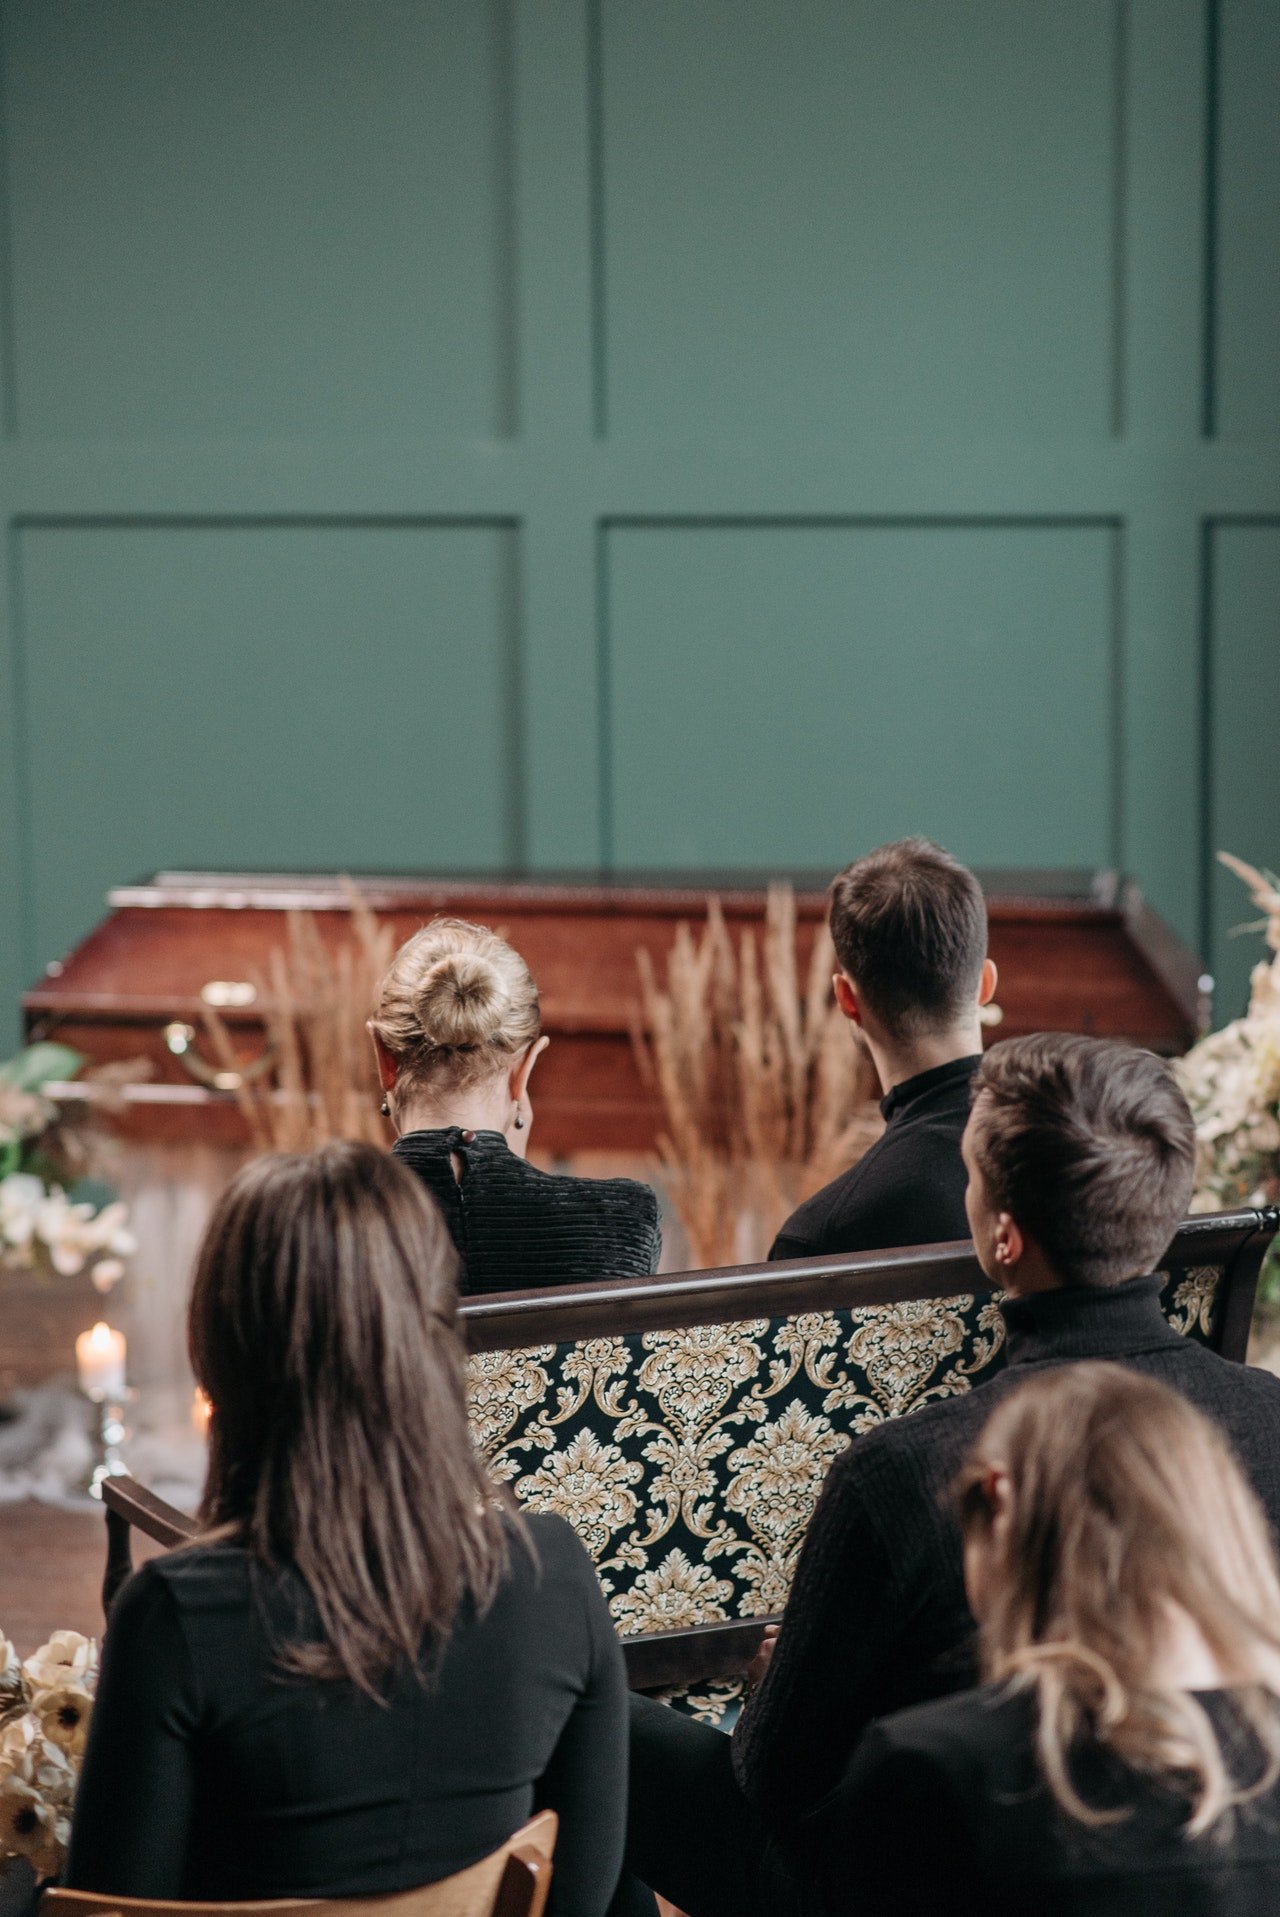 Bei der Beerdigung weinten sie alle und bedauerten ihre Worte im Krankenhaus. | Quelle: Pexels